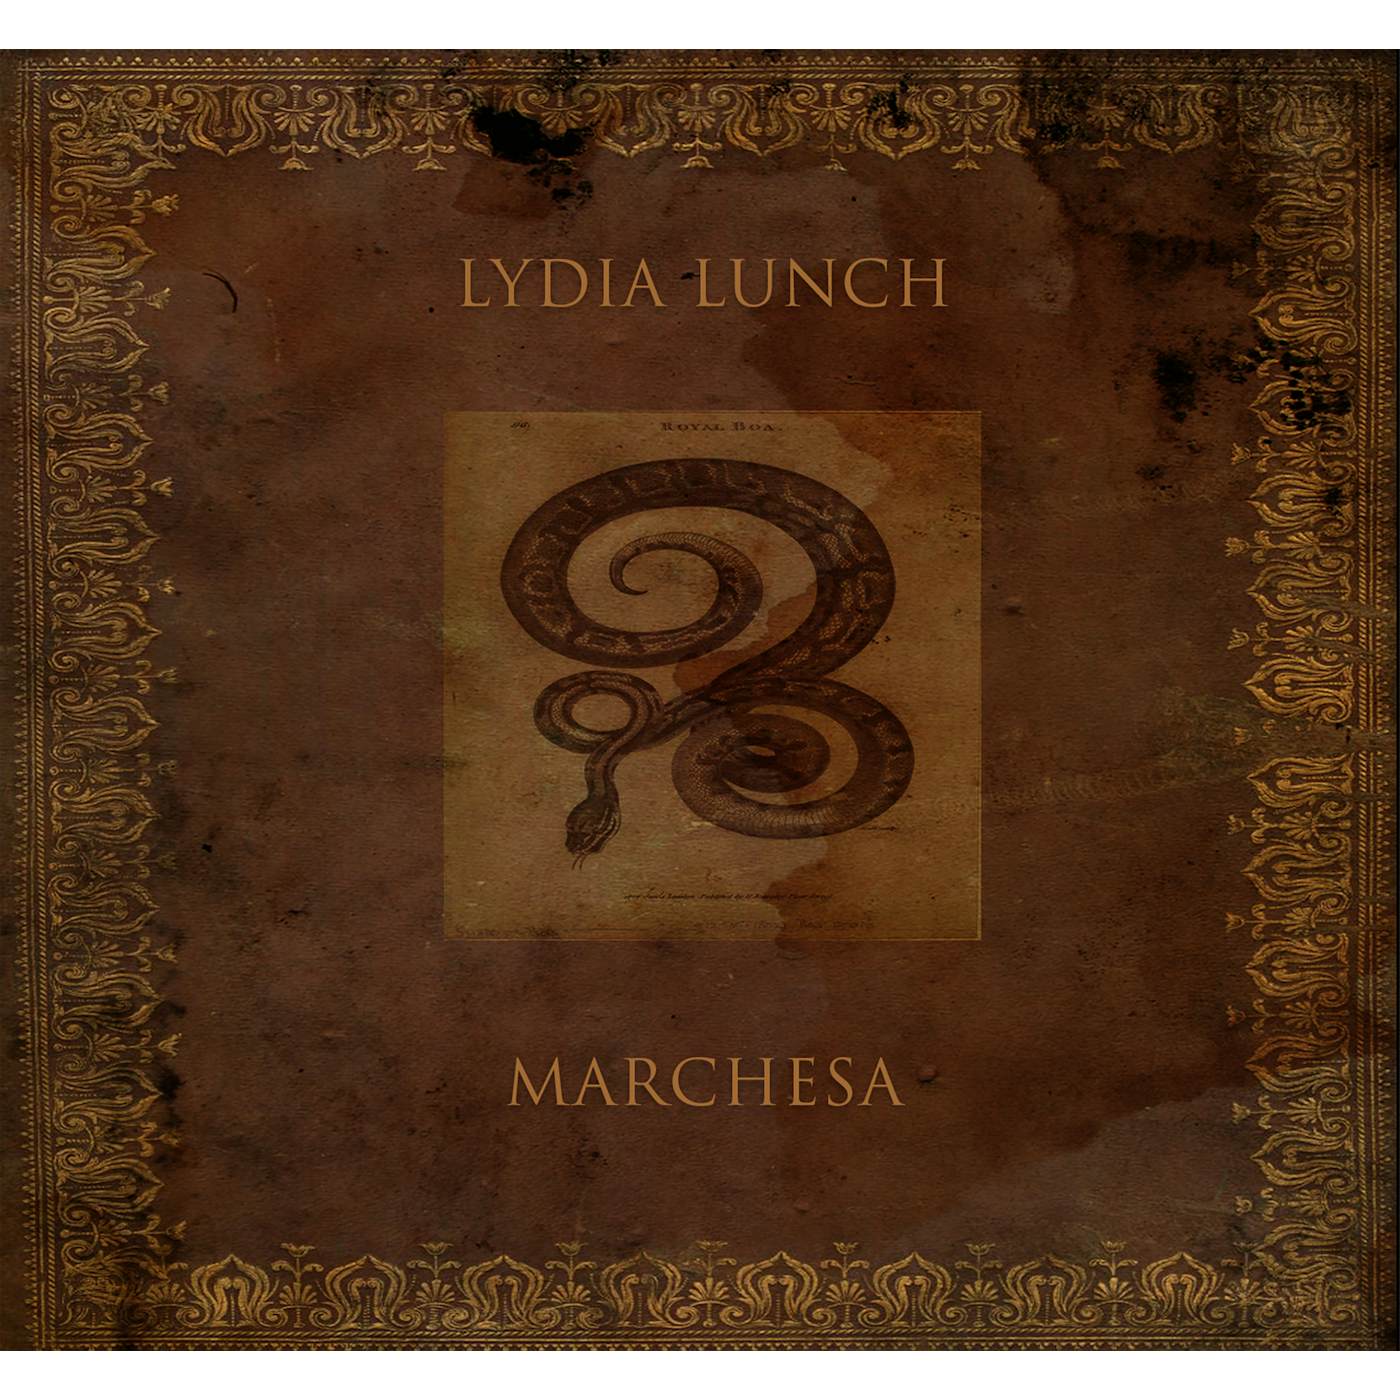 Lydia Lunch 67080 MARCHESA CD